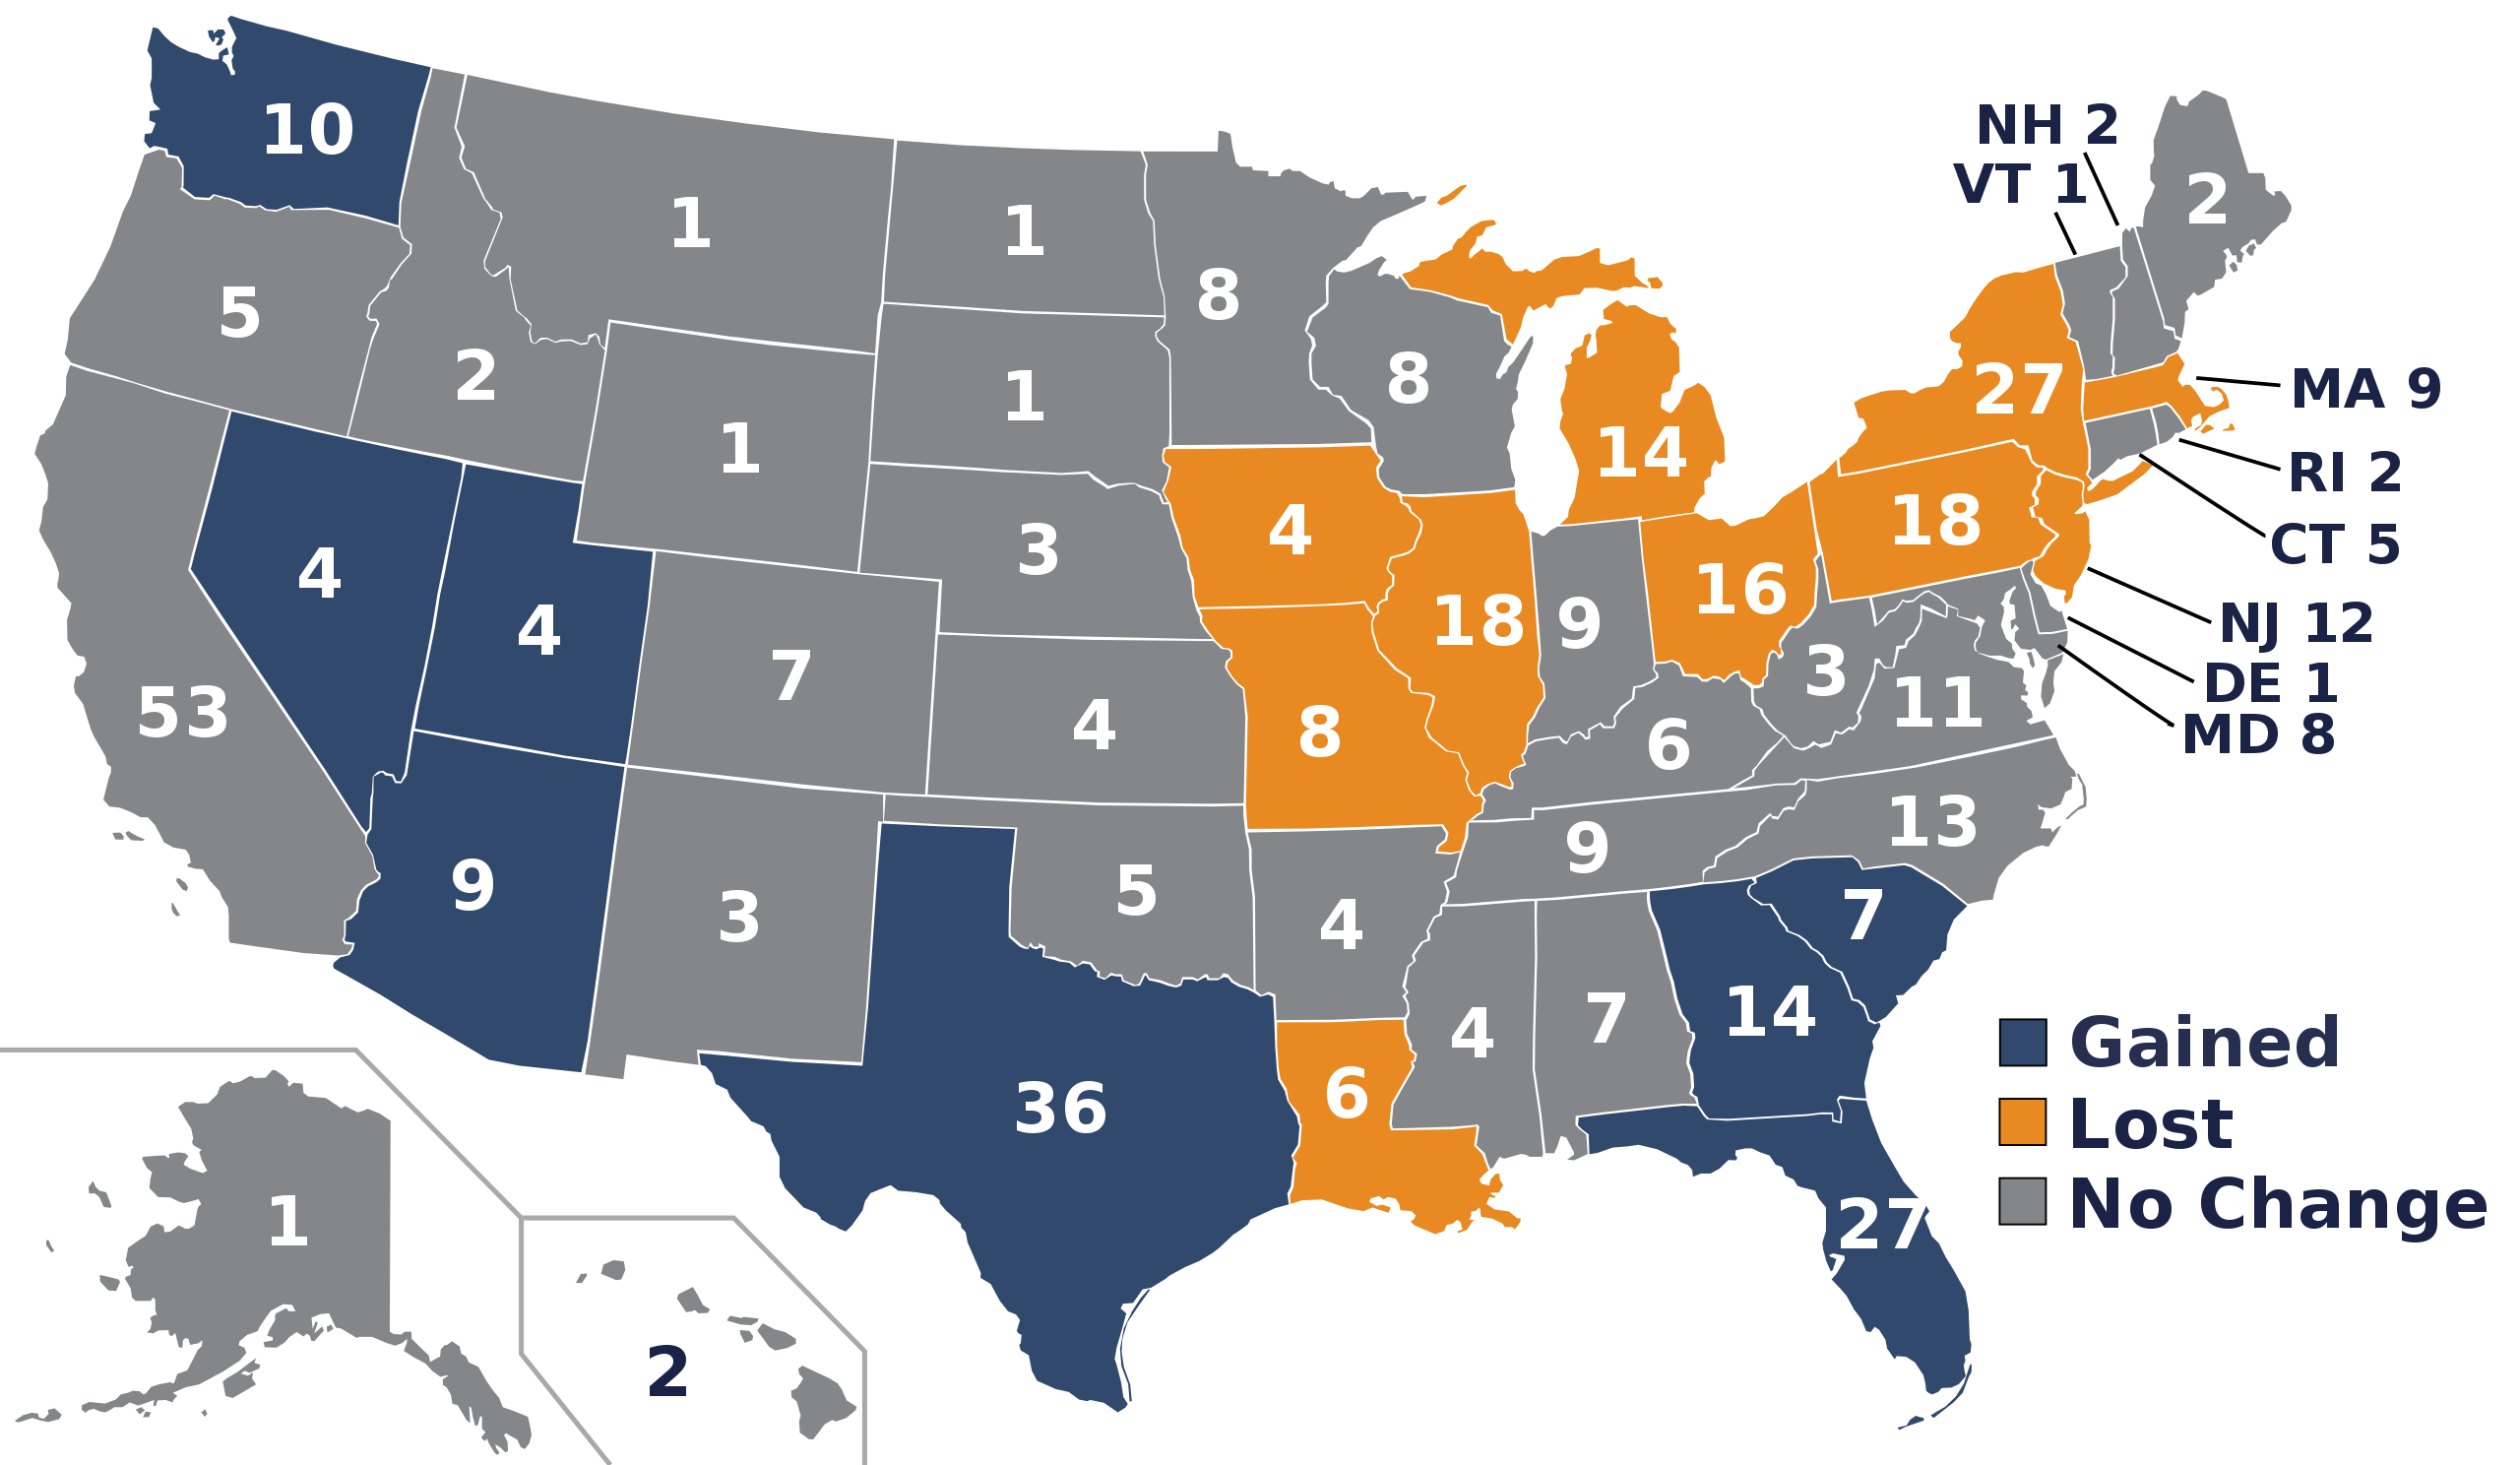 选区重划与被迫退休:2020年美国人口普查的影响与2022年中期选举